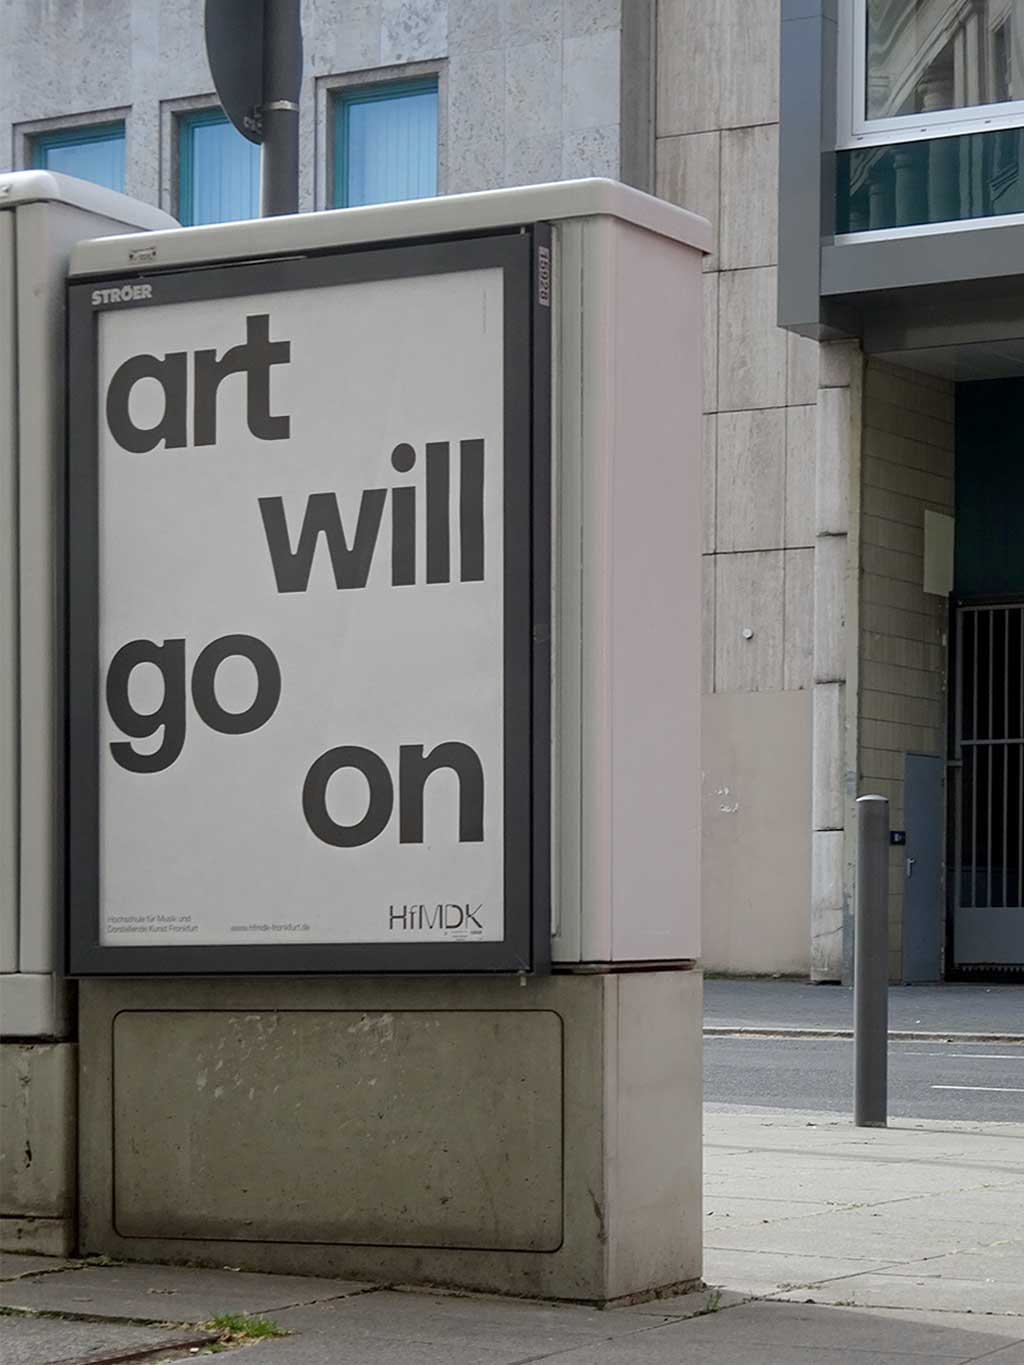 art will go on - Plakat der HfMDK Frankfurt